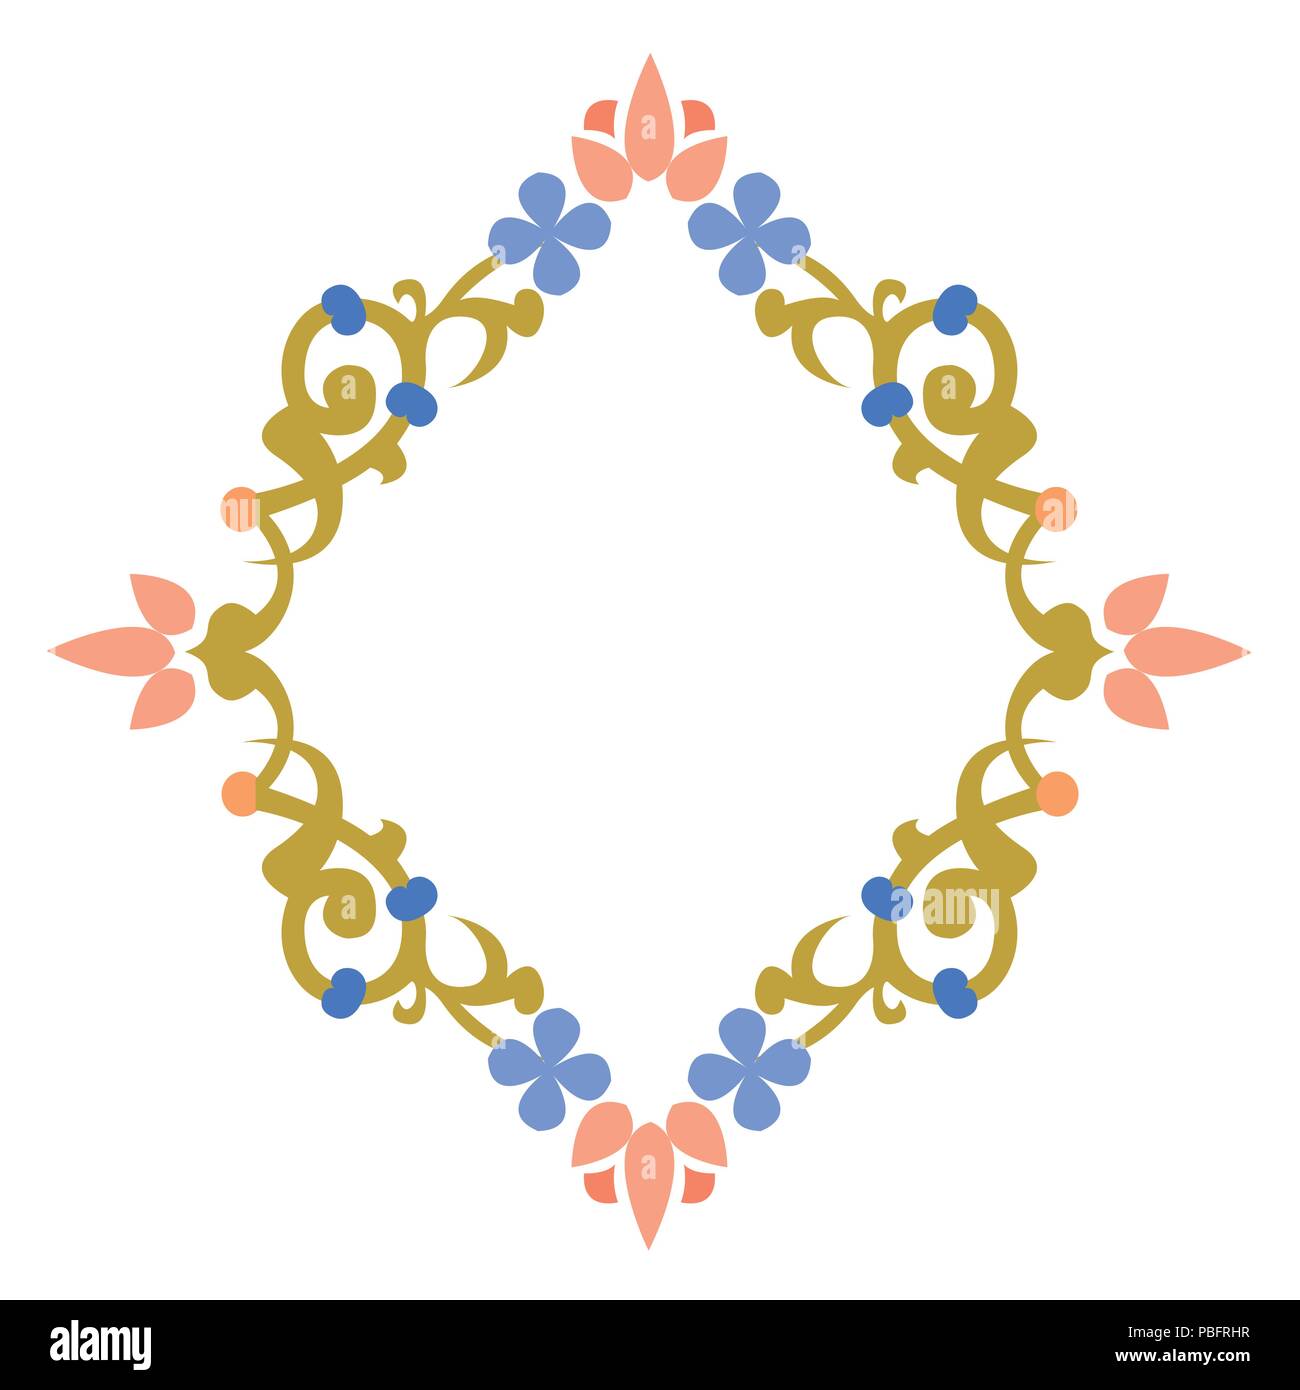 Bunt garniert rhombus Shape, Blumen und Blätter, einfache flache Design Grenze Stock Vektor